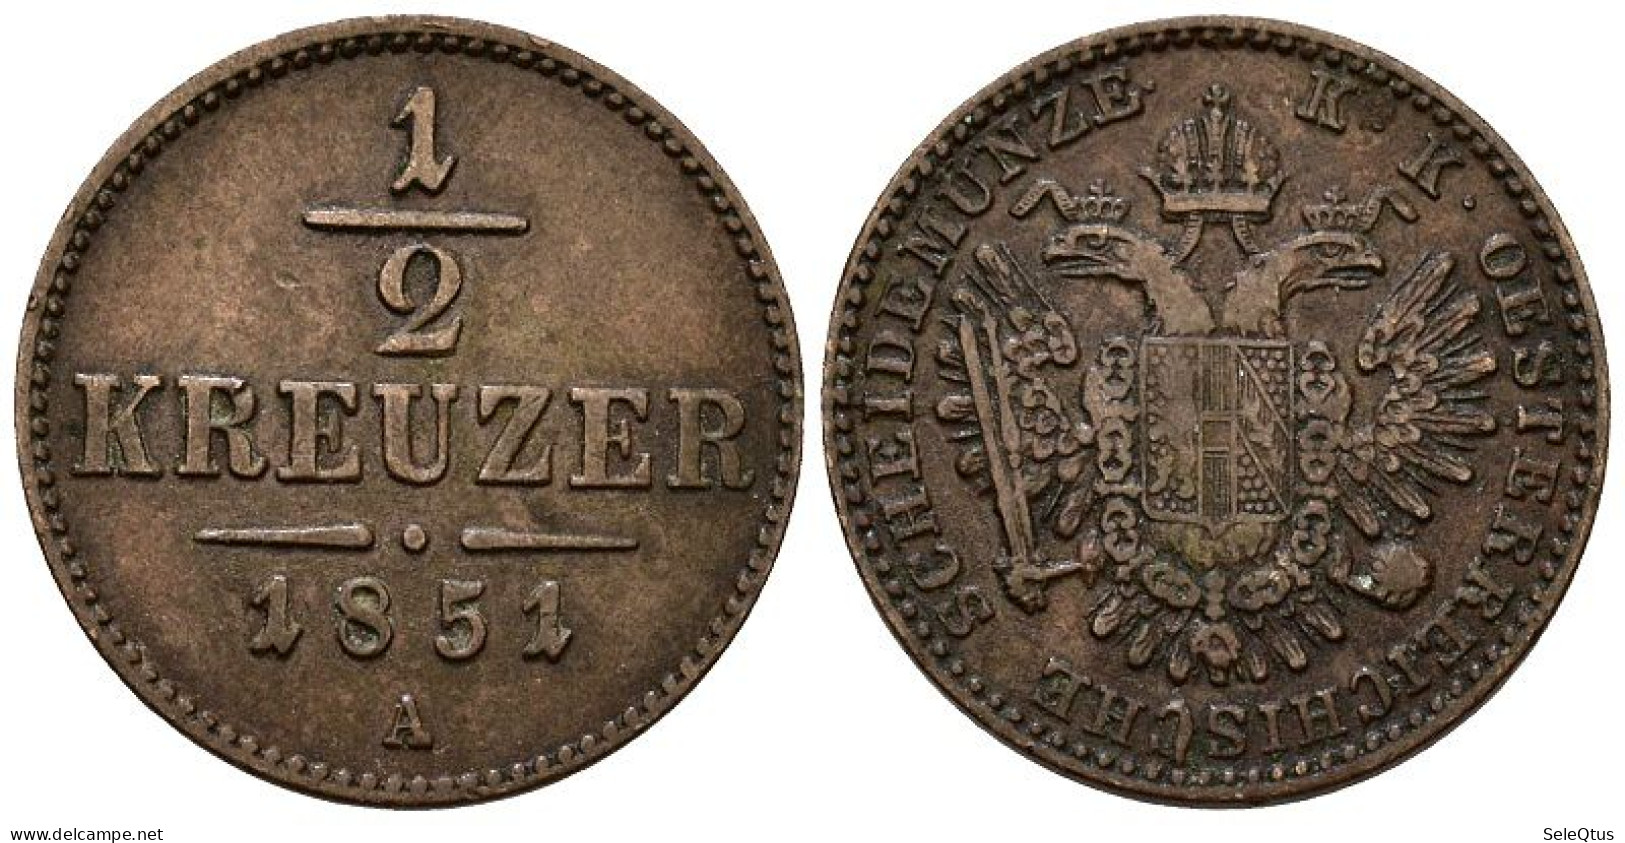 Monedas Antiguas - Ancient Coins (00123-007-1090) - Oostenrijk